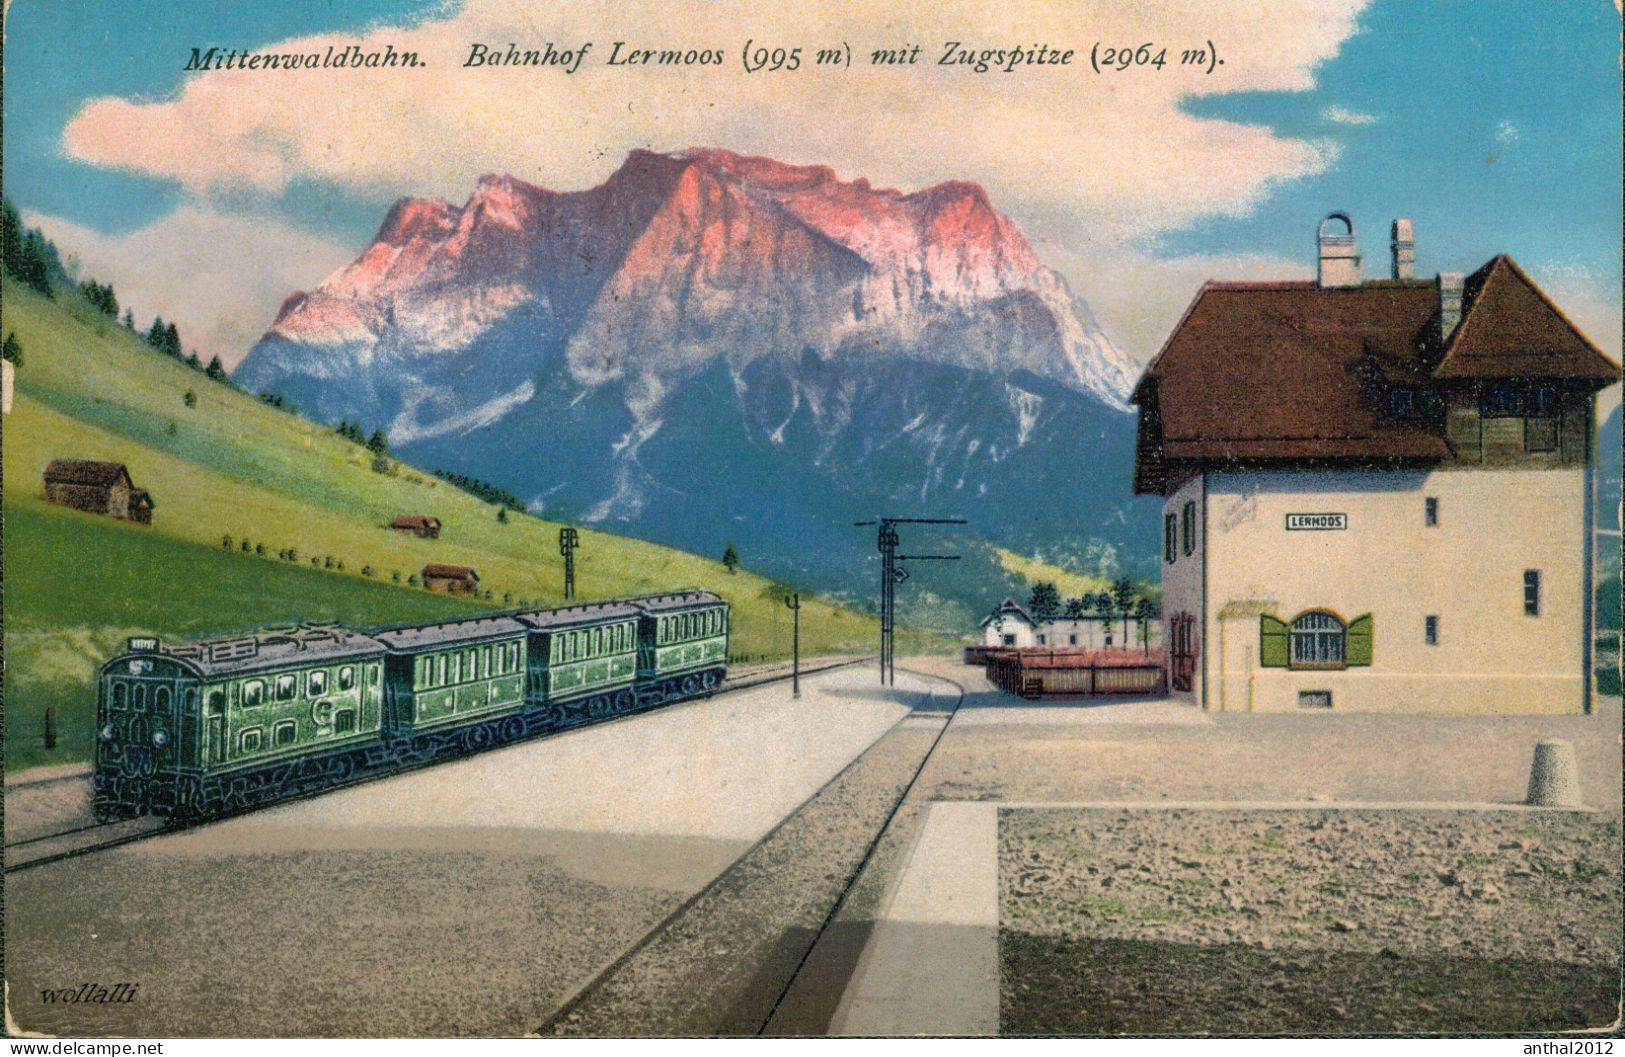 Superrar Bahnhof La Gare Lermoos Österreich Tirol Mit Zug 24.5.1921 Zugspitze - Gares - Avec Trains